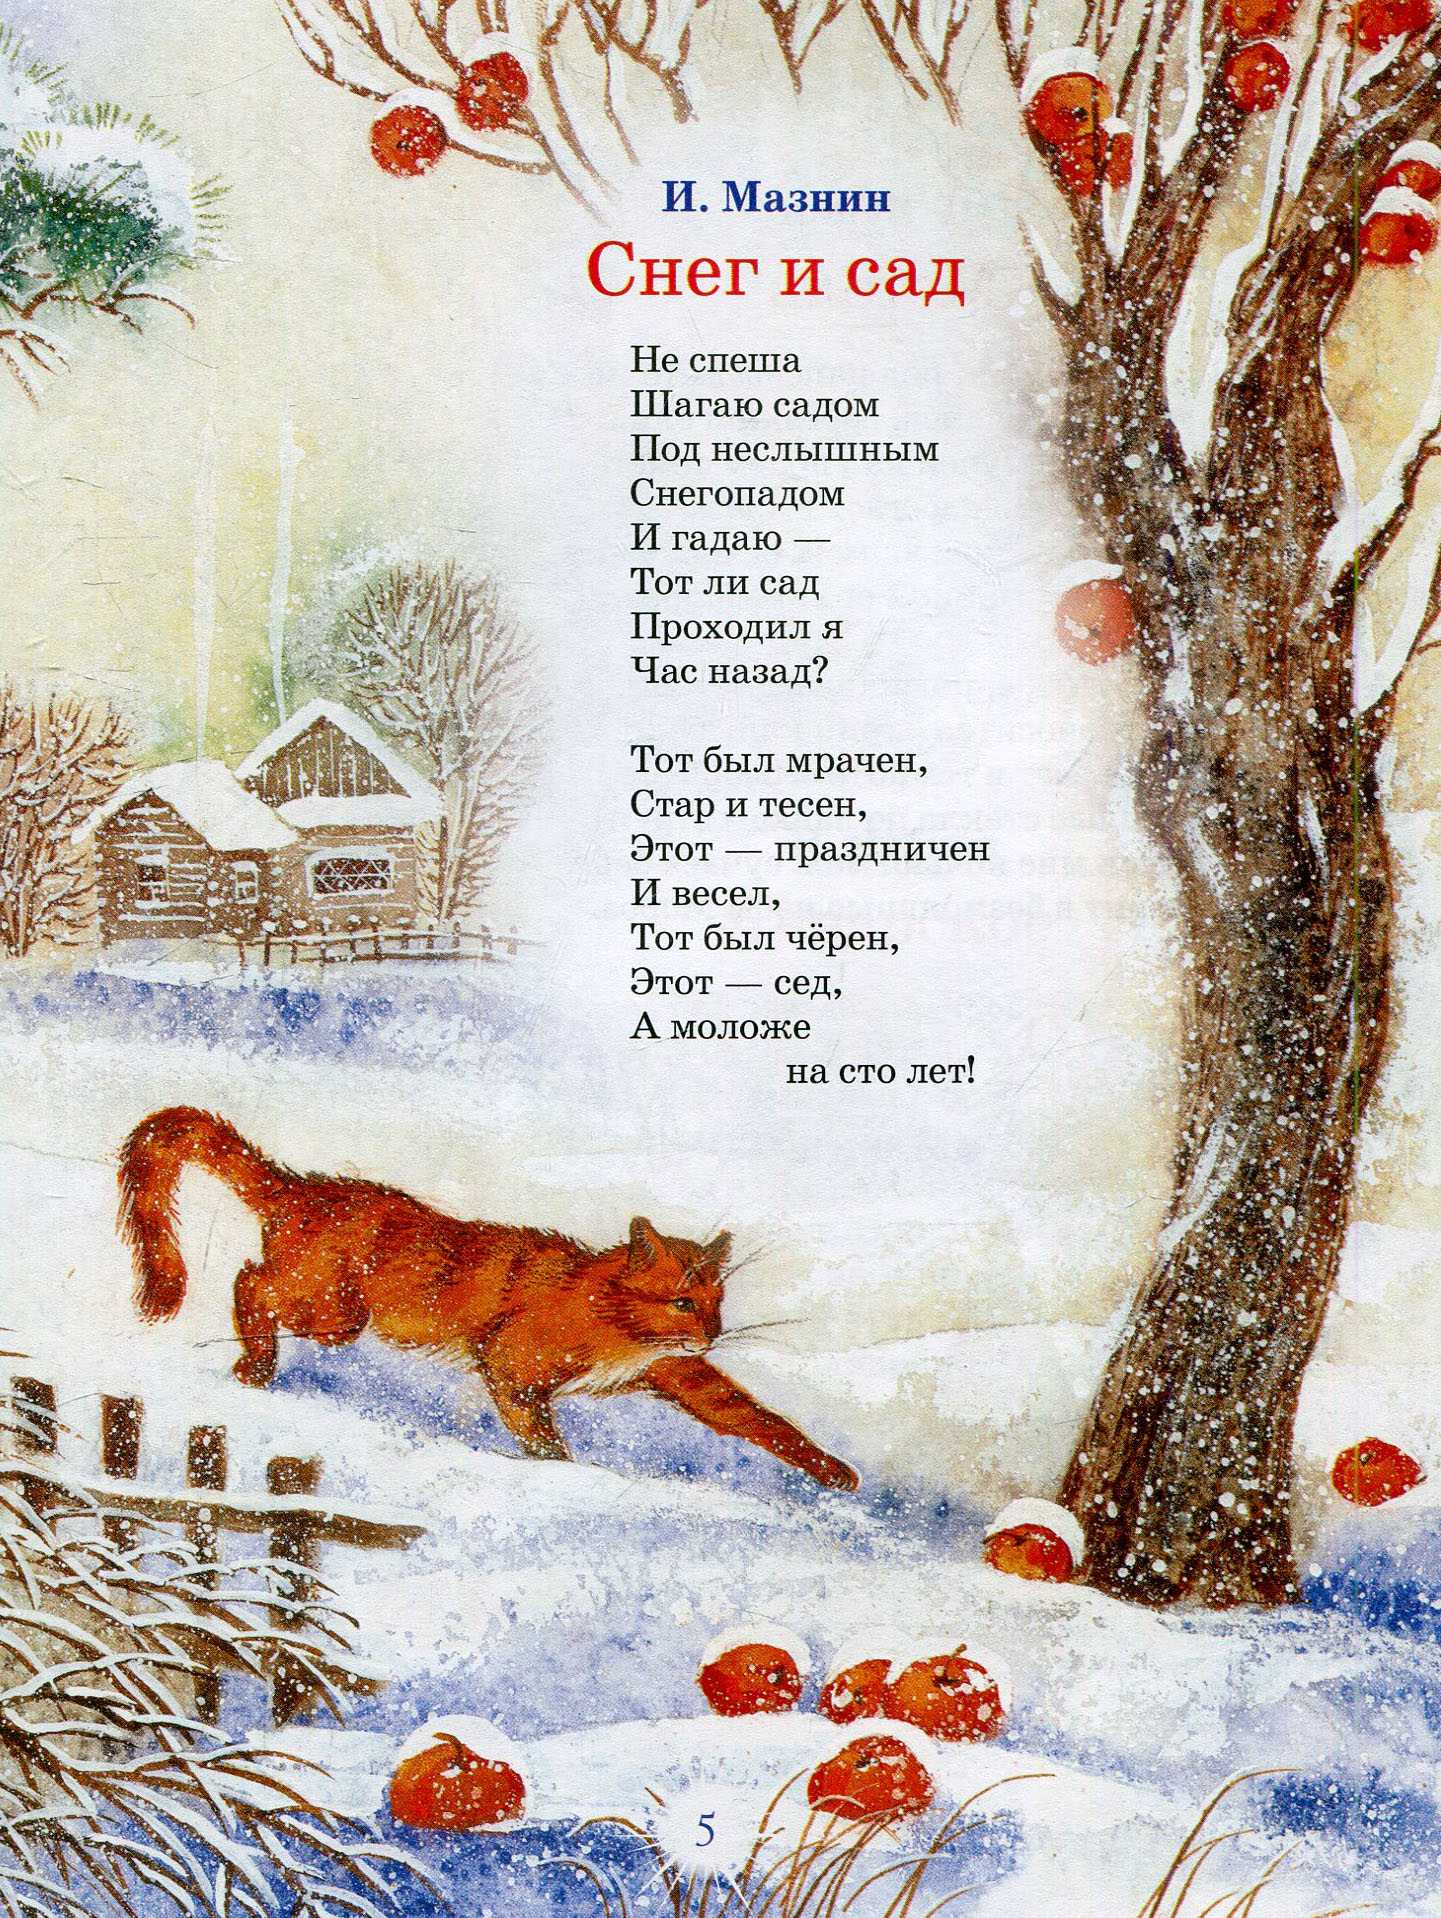 Стихи про зиму для детей 5-6 лет для заучивания наизусть - короткие красивые стихи о зиме - стихи для детей